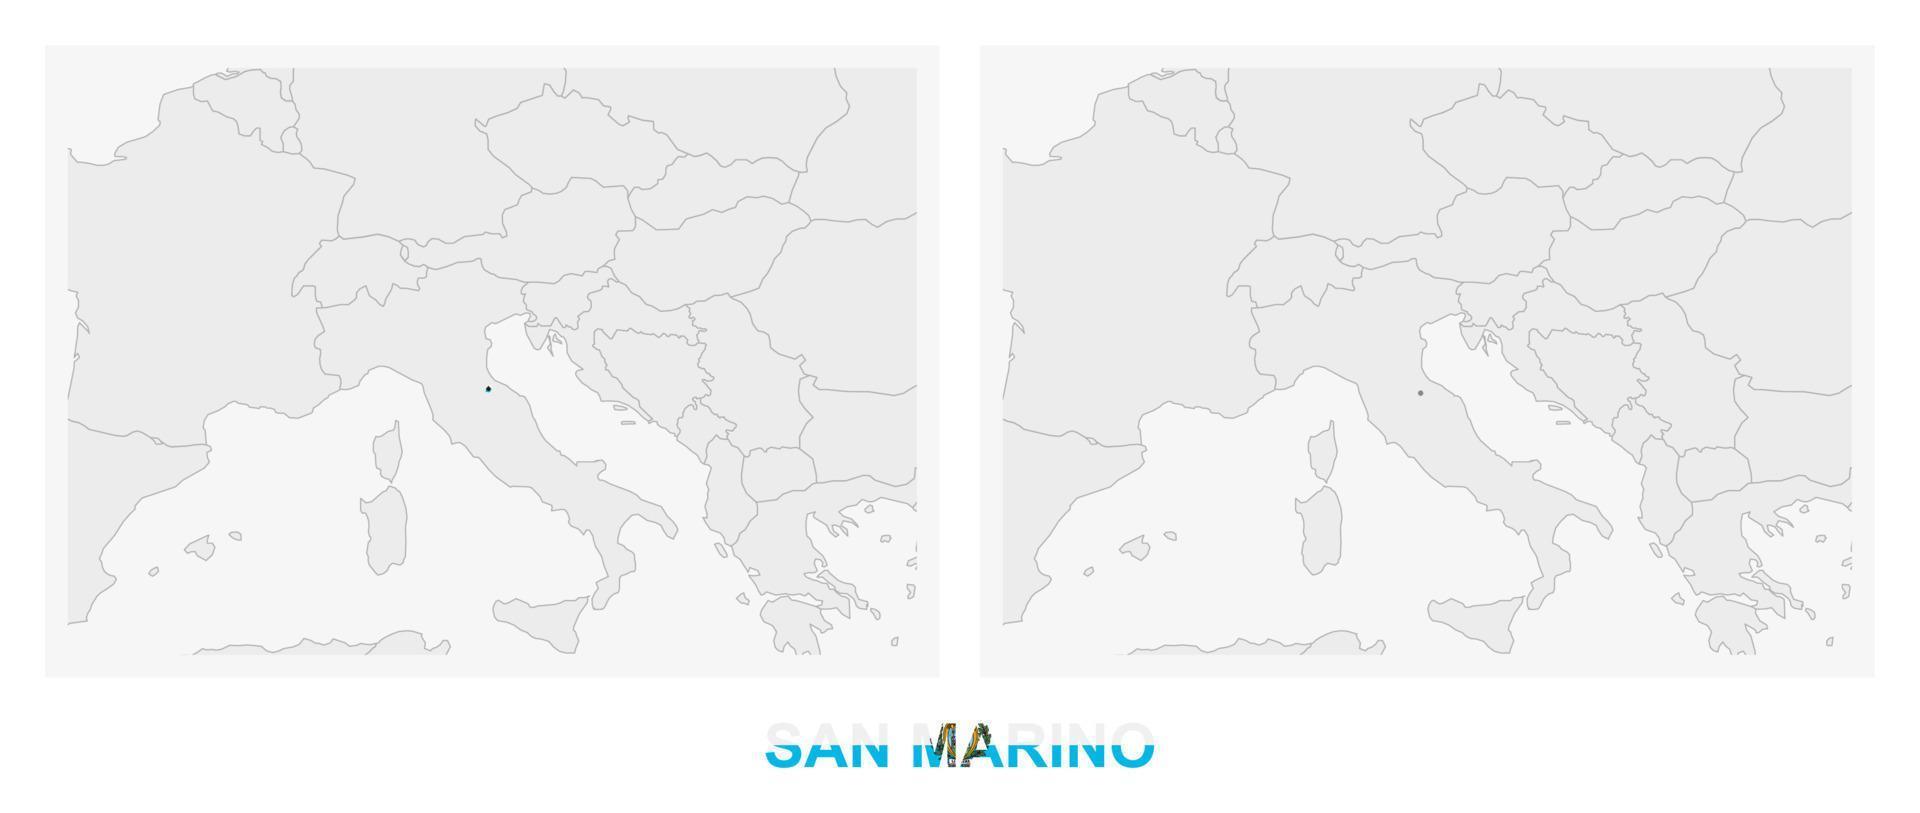 dos versiones del mapa de san marino, con la bandera de san marino y resaltada en gris oscuro. vector